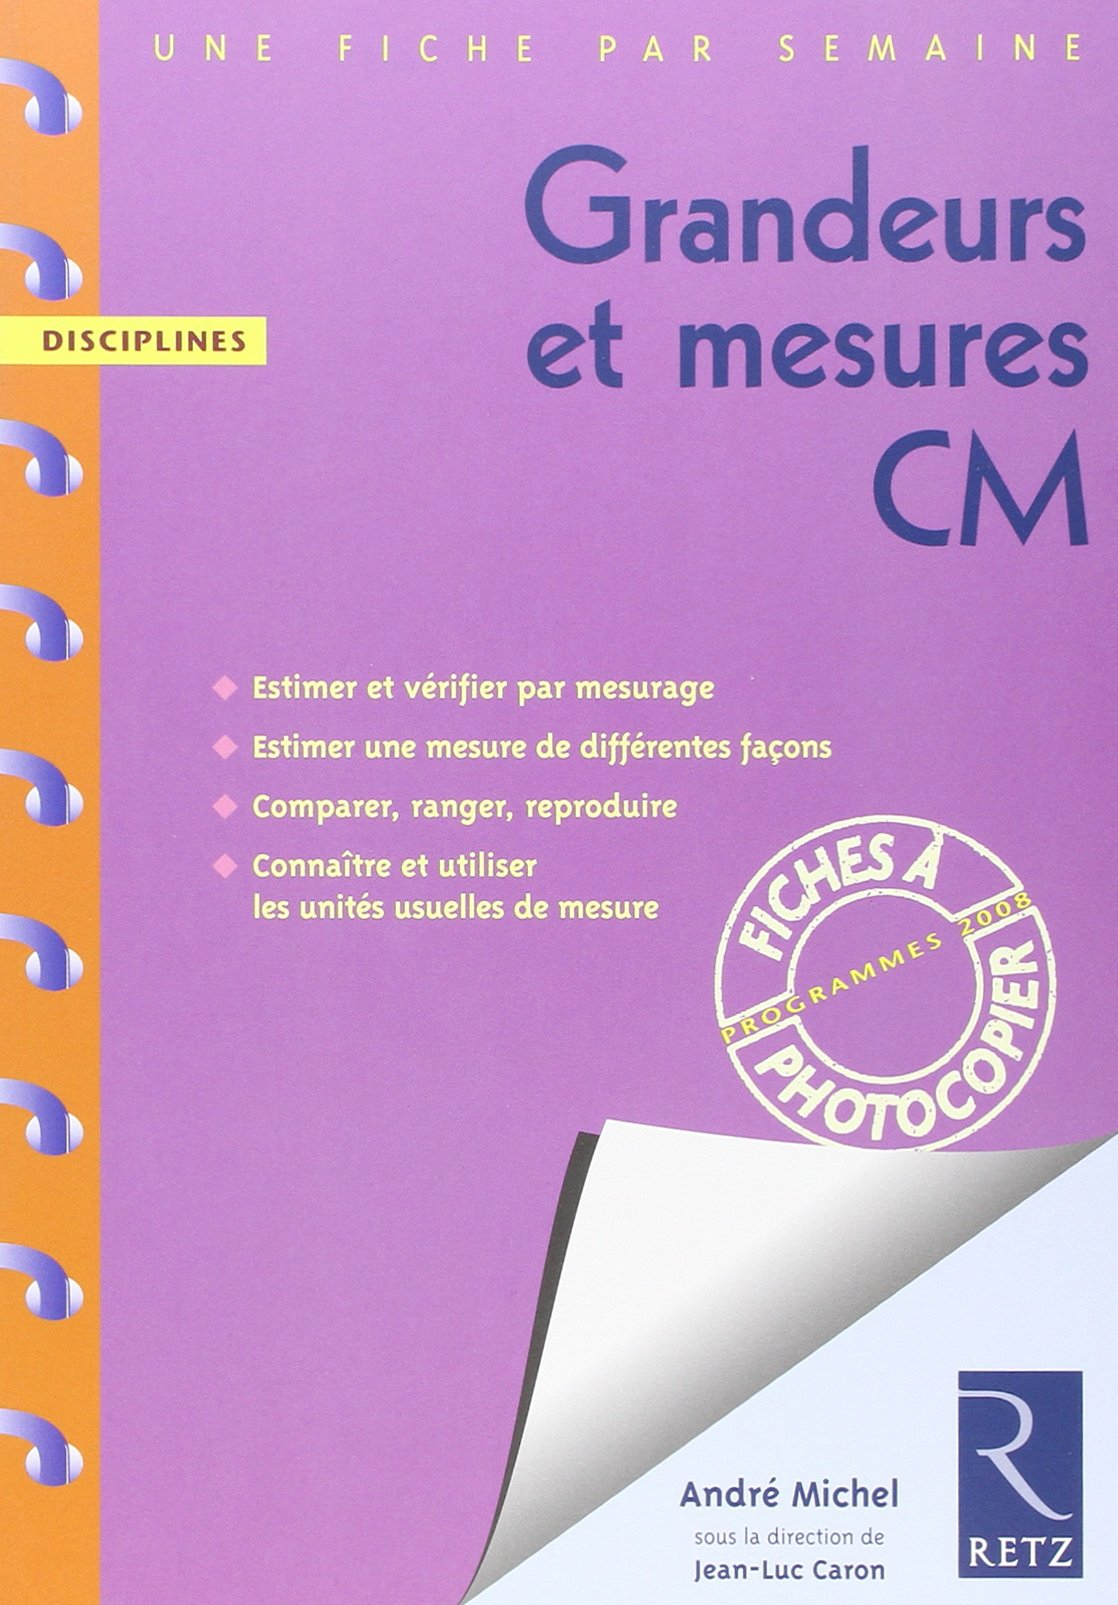 Grandeurs et mesures CM : programmes 2008 : estimer et vérifier par mesurage, estimer une mesure de 